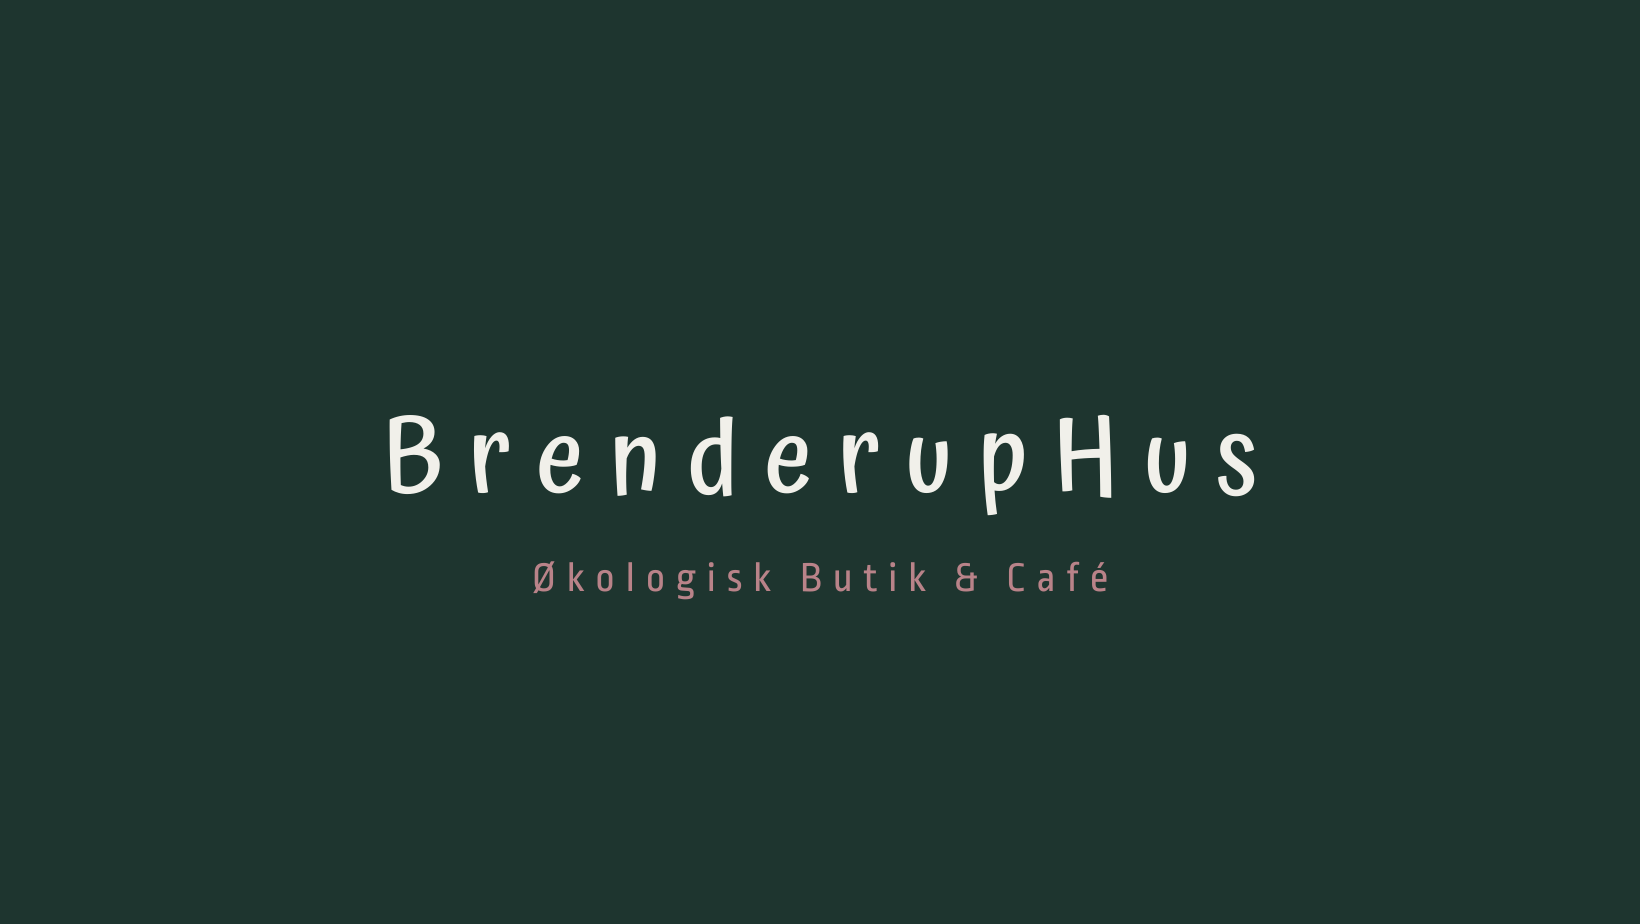 Brenderuphus